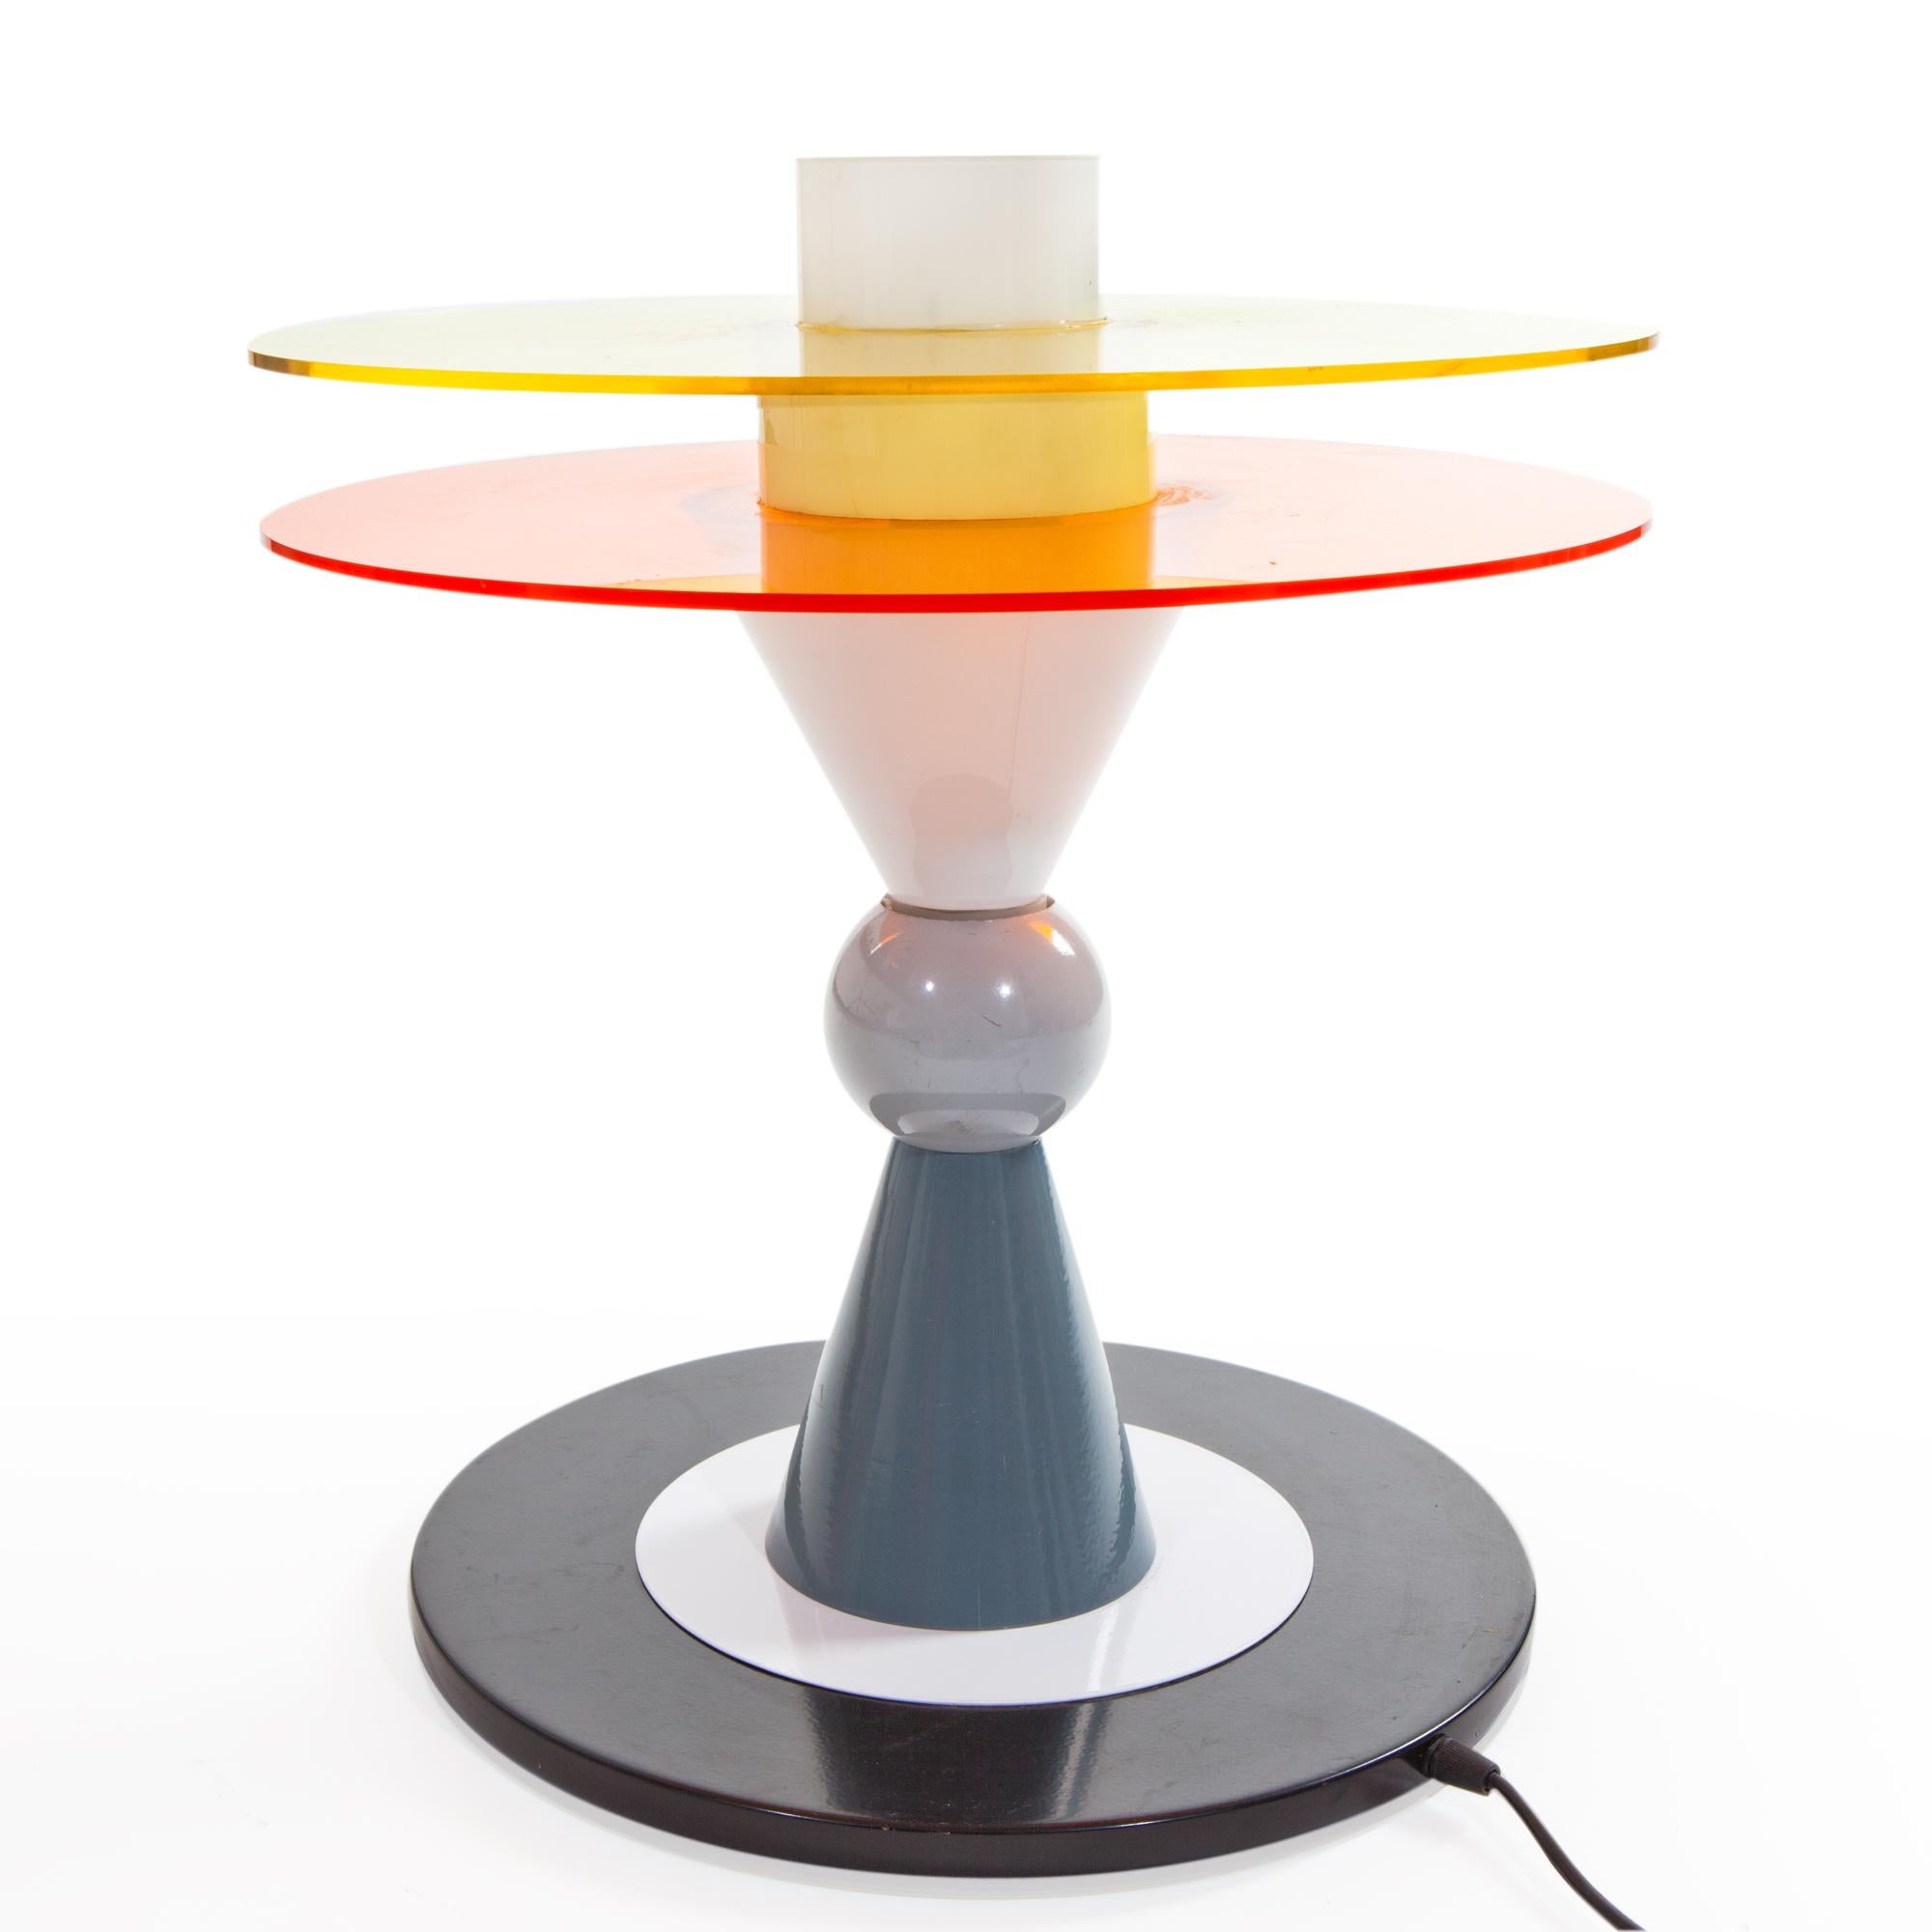 Vous voyez ici la lampe de table Bay en verre, aluminium et plexiglas, câblée aux États-Unis, conçue par Ettore Sottsass en 1983 pour Memphis Milano.

Ettore Sottsass est né à Innsbruck en 1917. En 1939, il obtient un diplôme d'architecture au